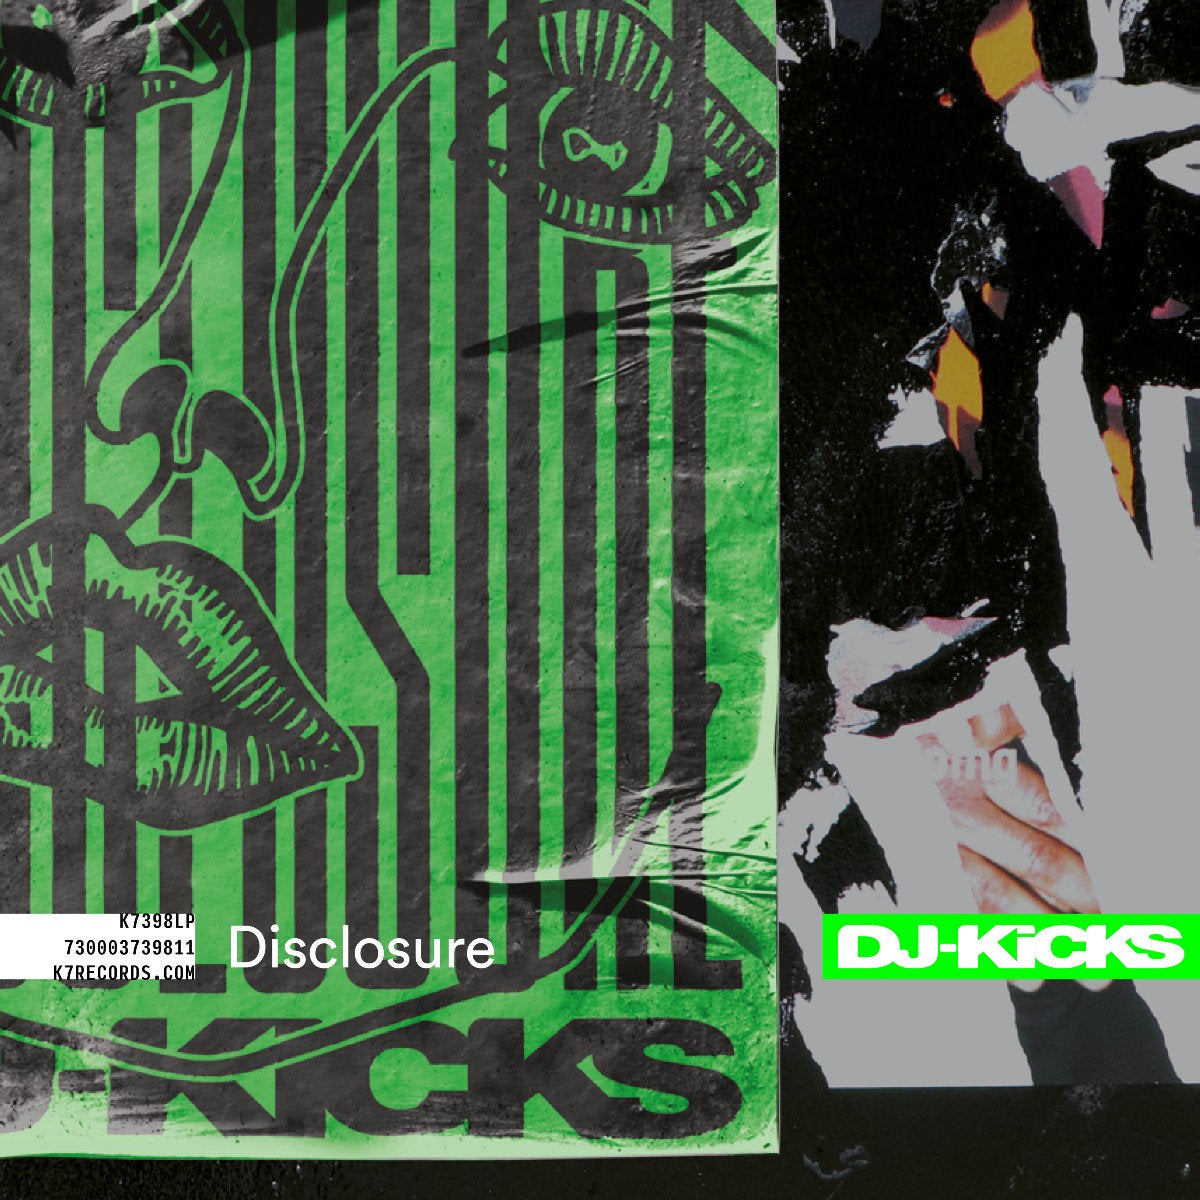 DISCLOSURE - DJ-Kicks (Various Artists) - Mixed CD